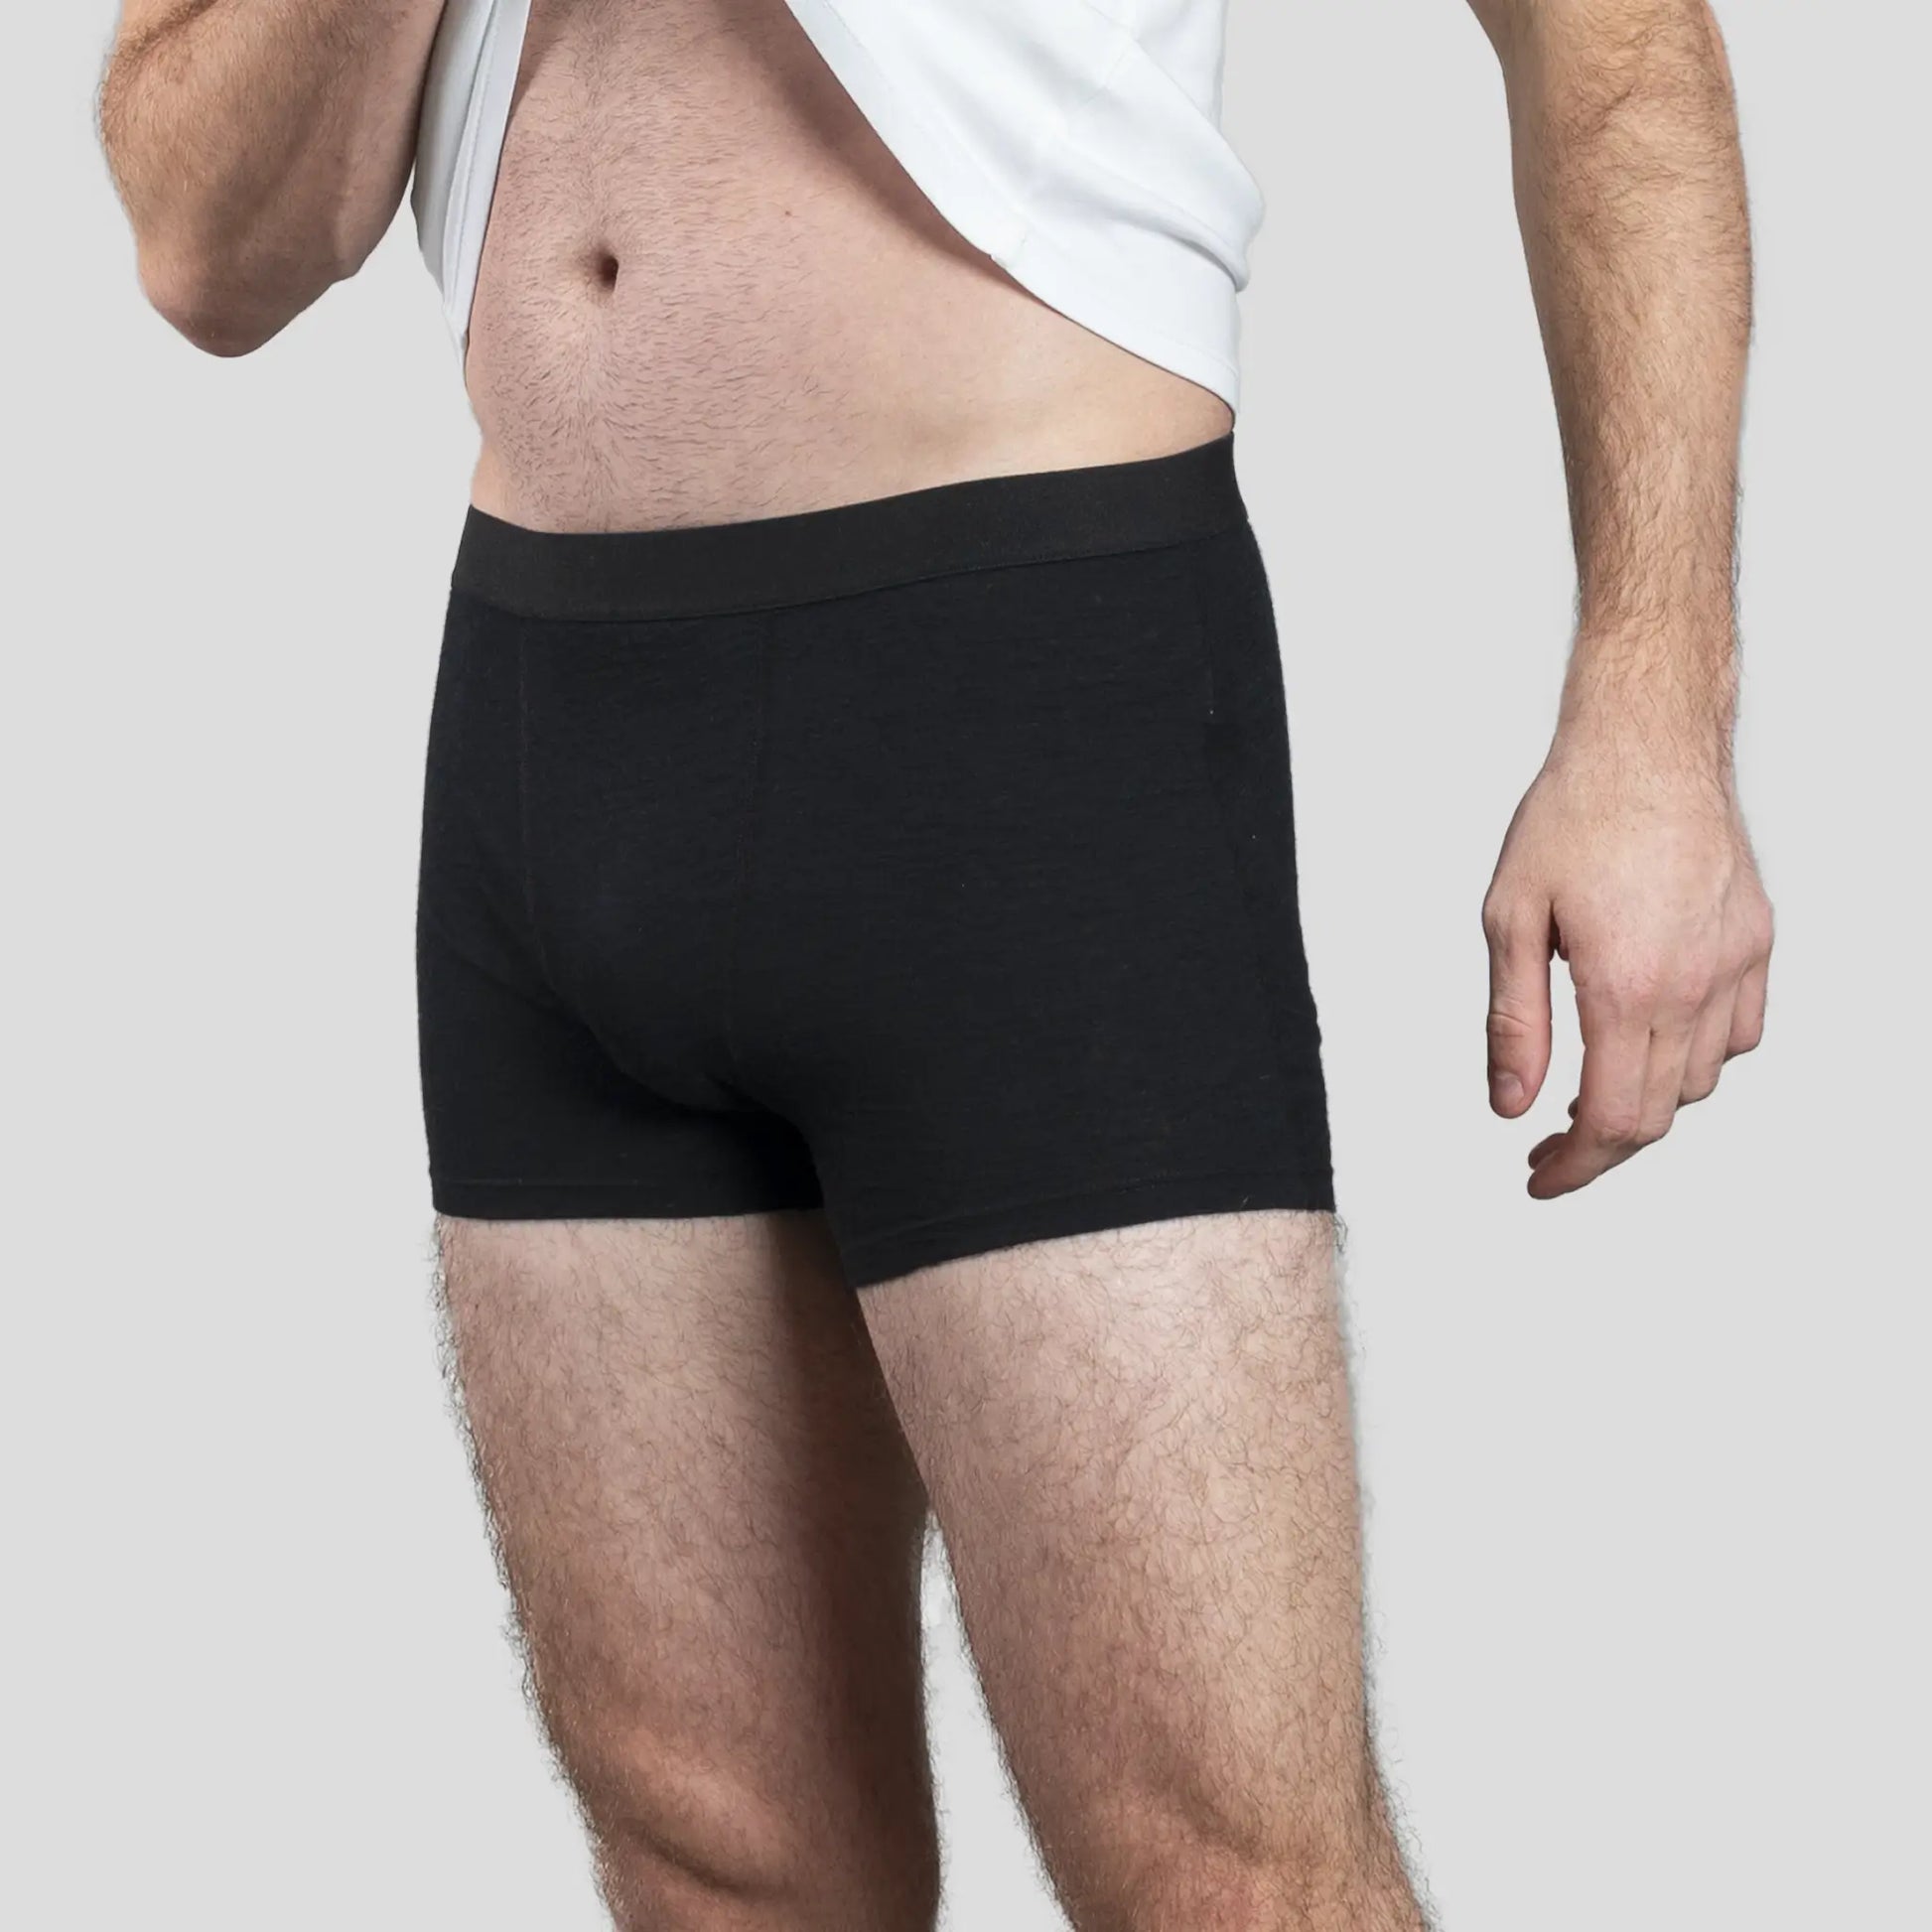 Men's Underwear Stay Toxic — WEAR